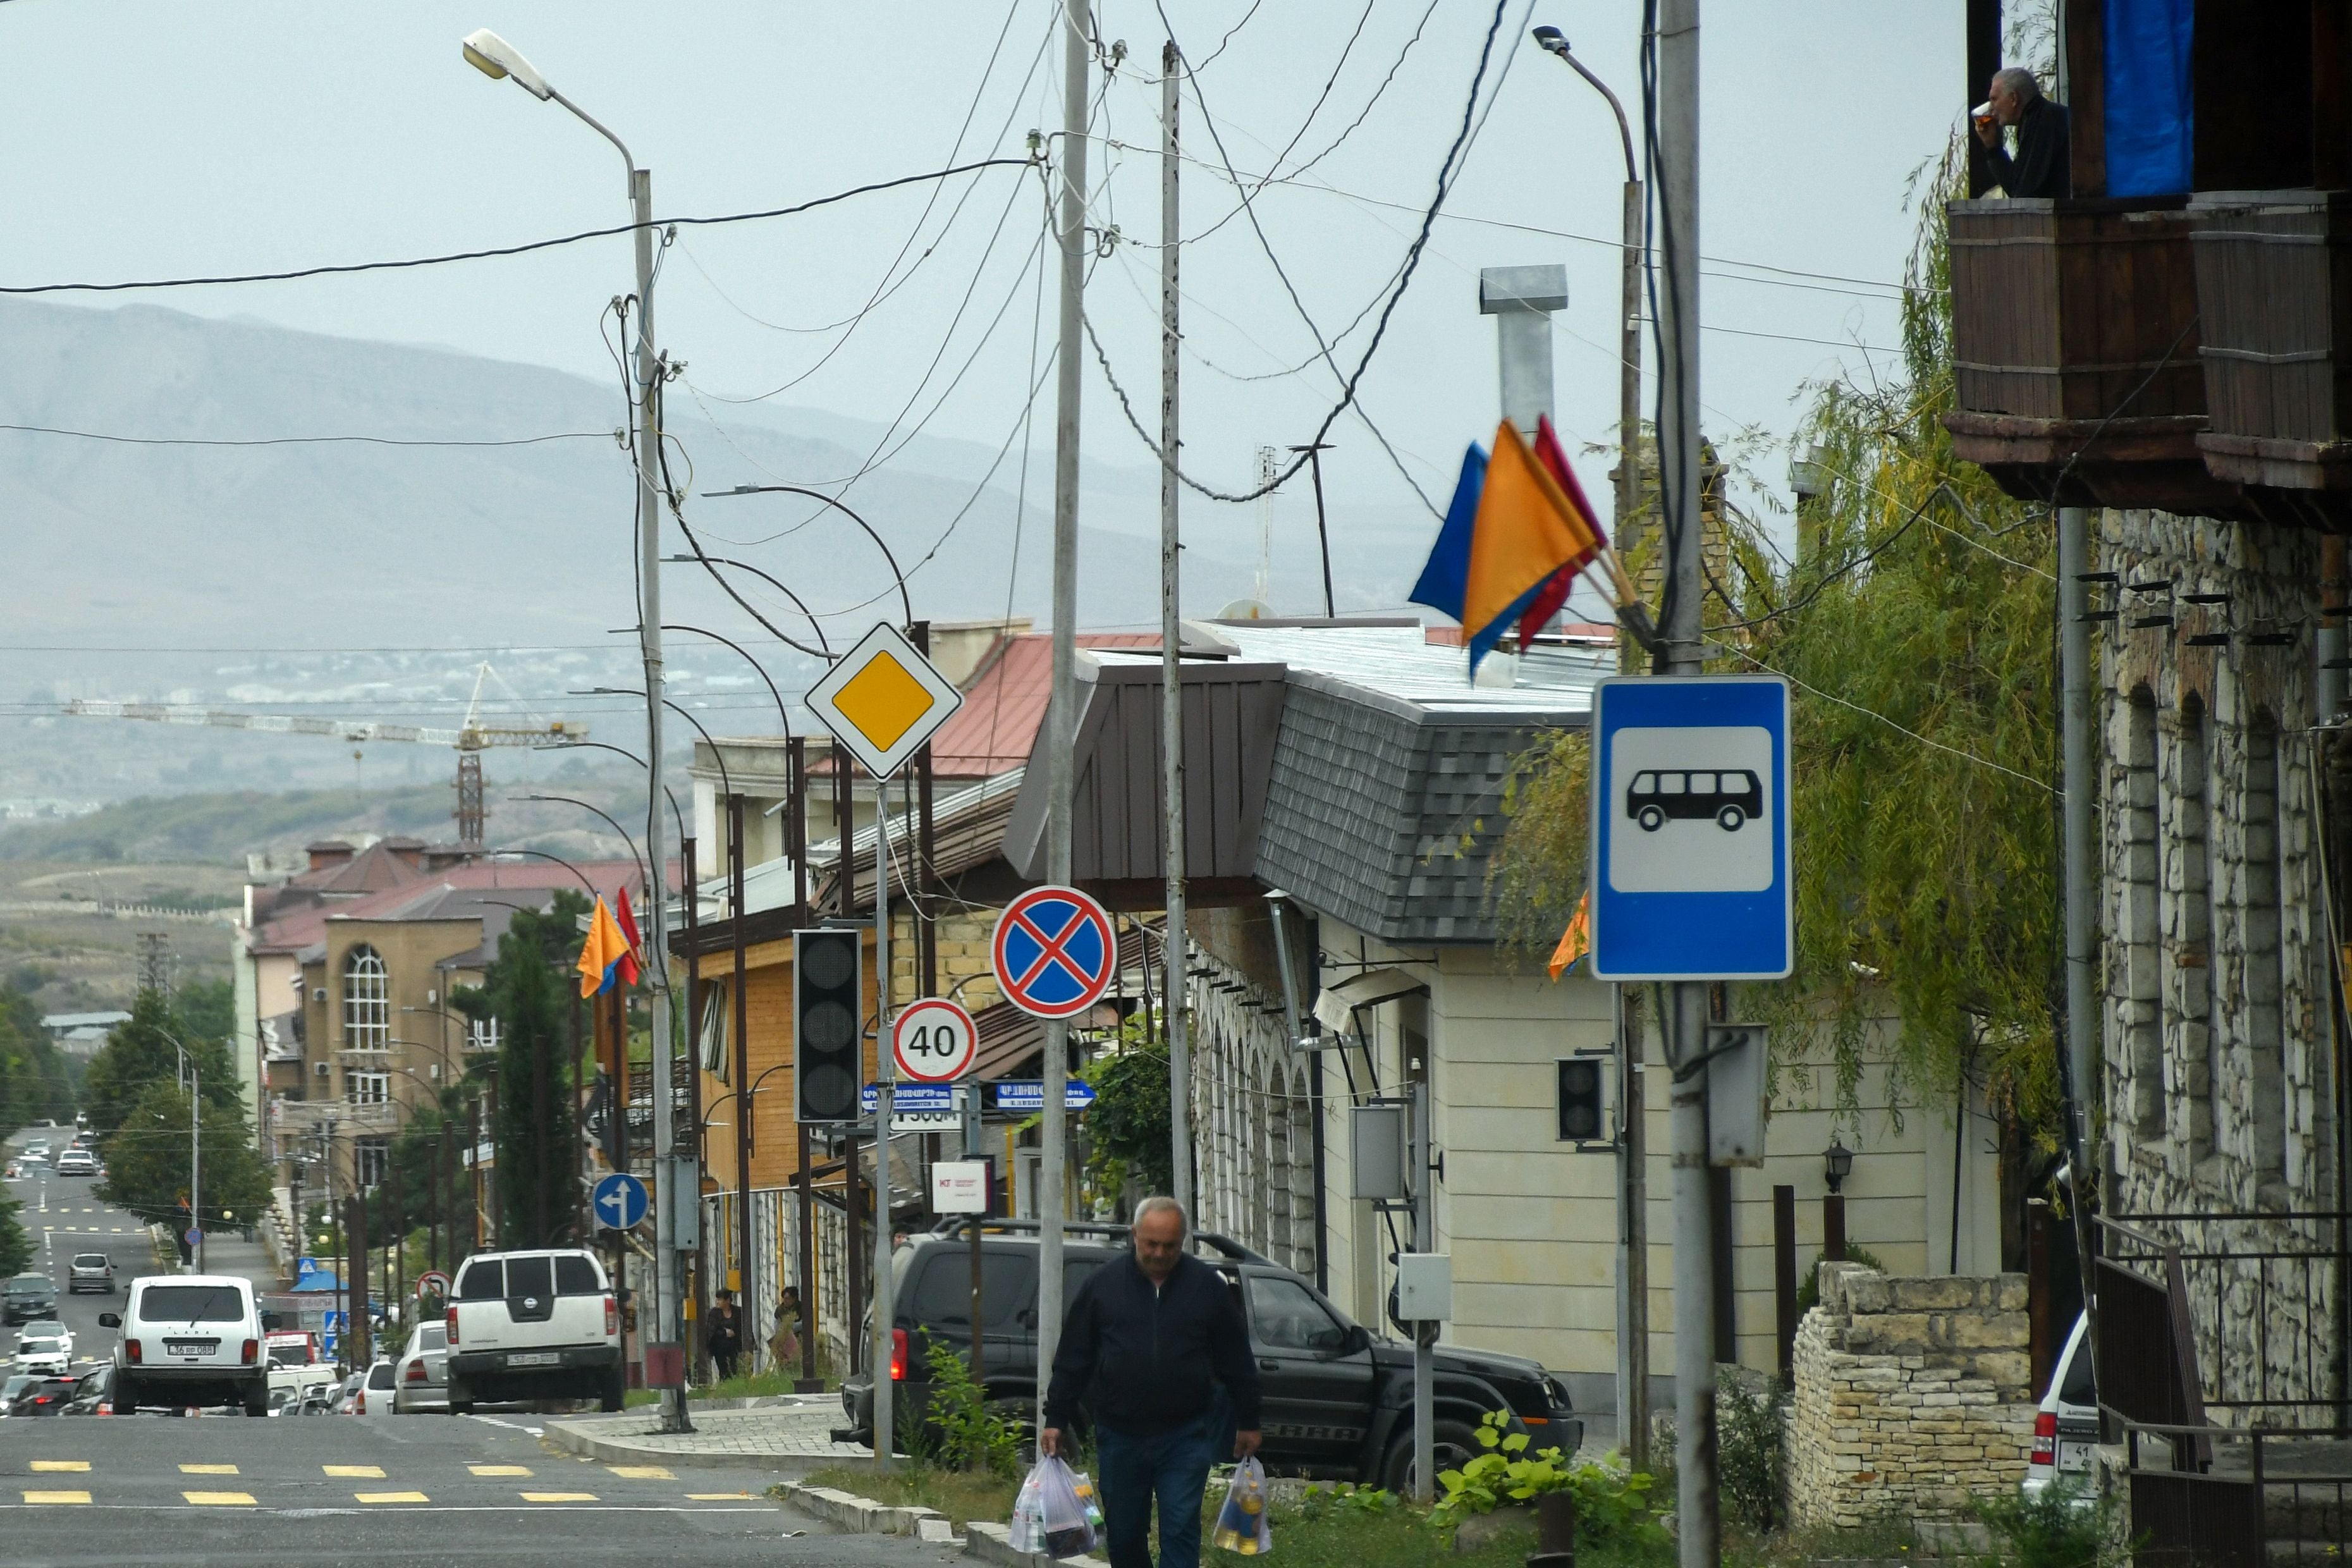 A view of Nagorny Karabakh's main city of Stepanakert